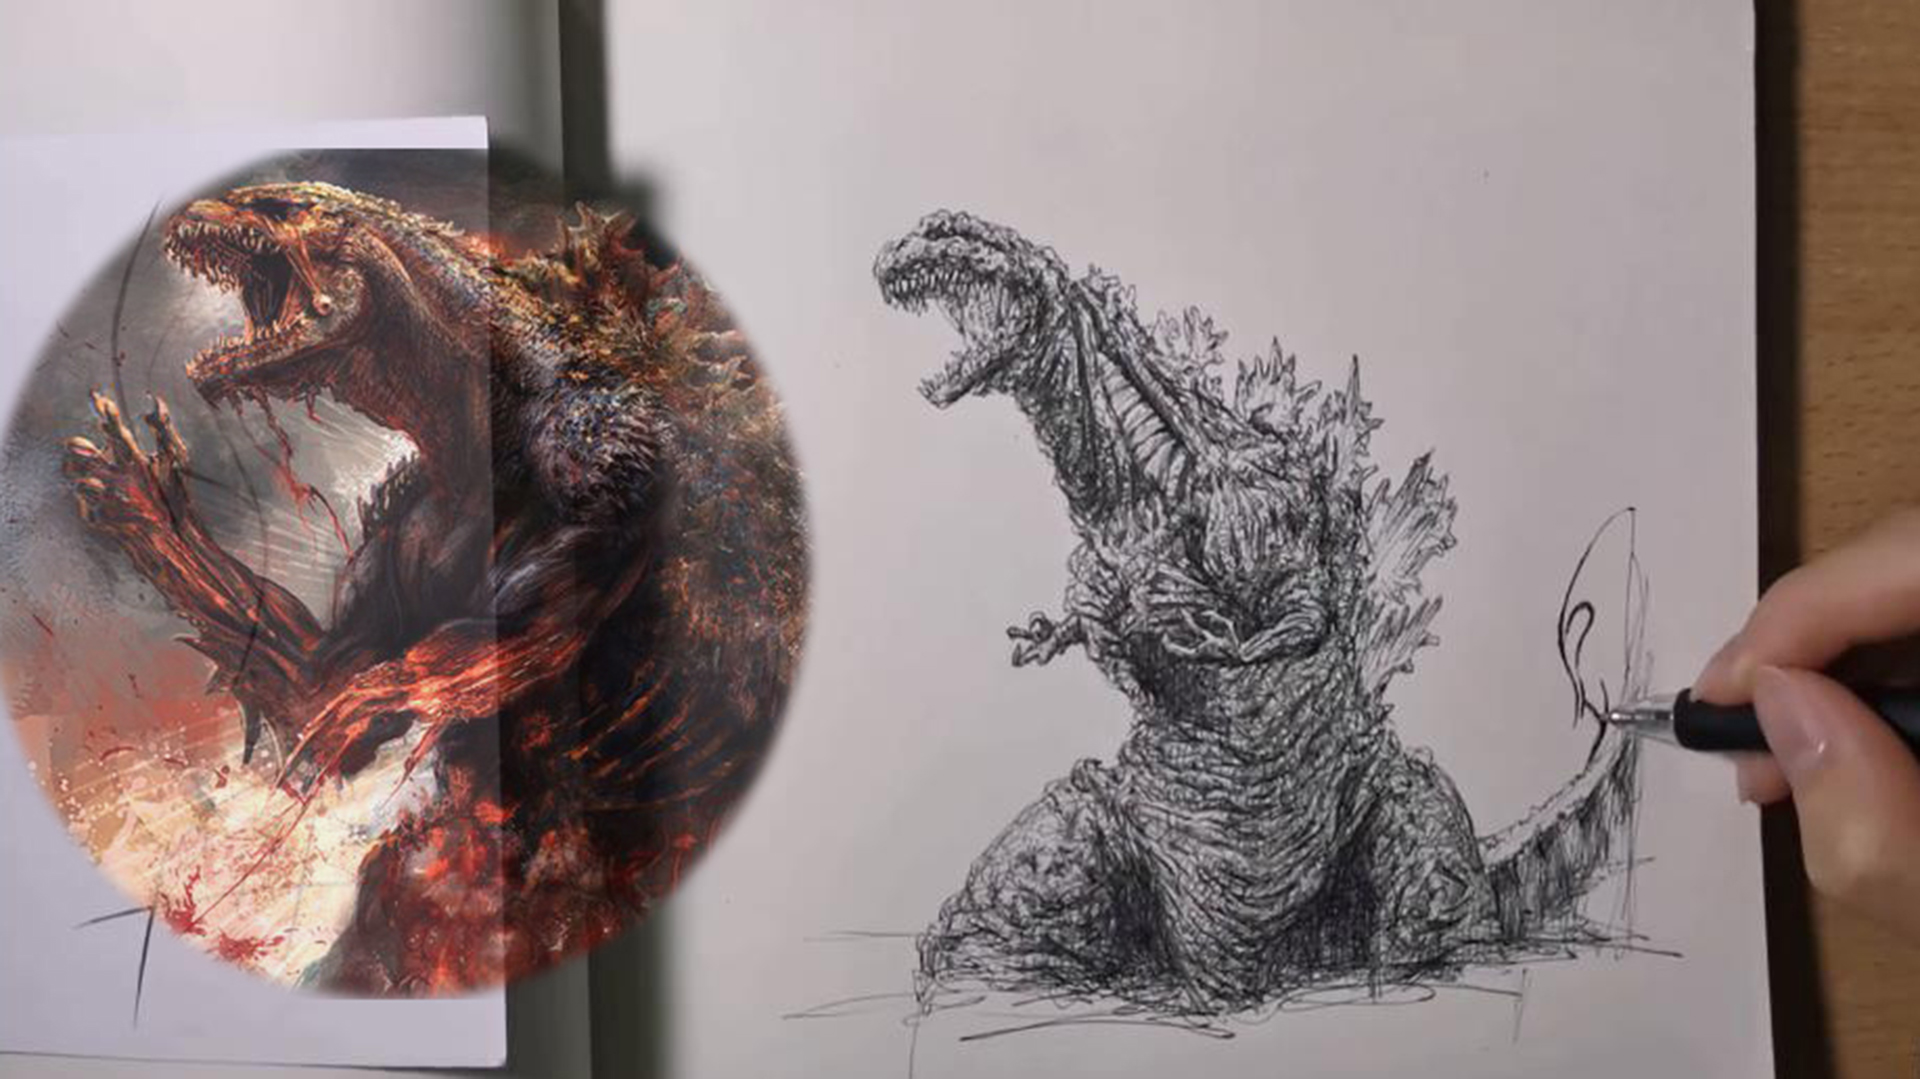 Godzilla Drawing - một bức tranh minh họa đặc biệt, thể hiện sự độc đáo, quyến rũ của một trong những con quái vật nổi tiếng nhất thế giới phim ảnh. Xem hình và tìm hiểu những bí mật đằng sau hình ảnh khổng lồ nhất của con vật này.